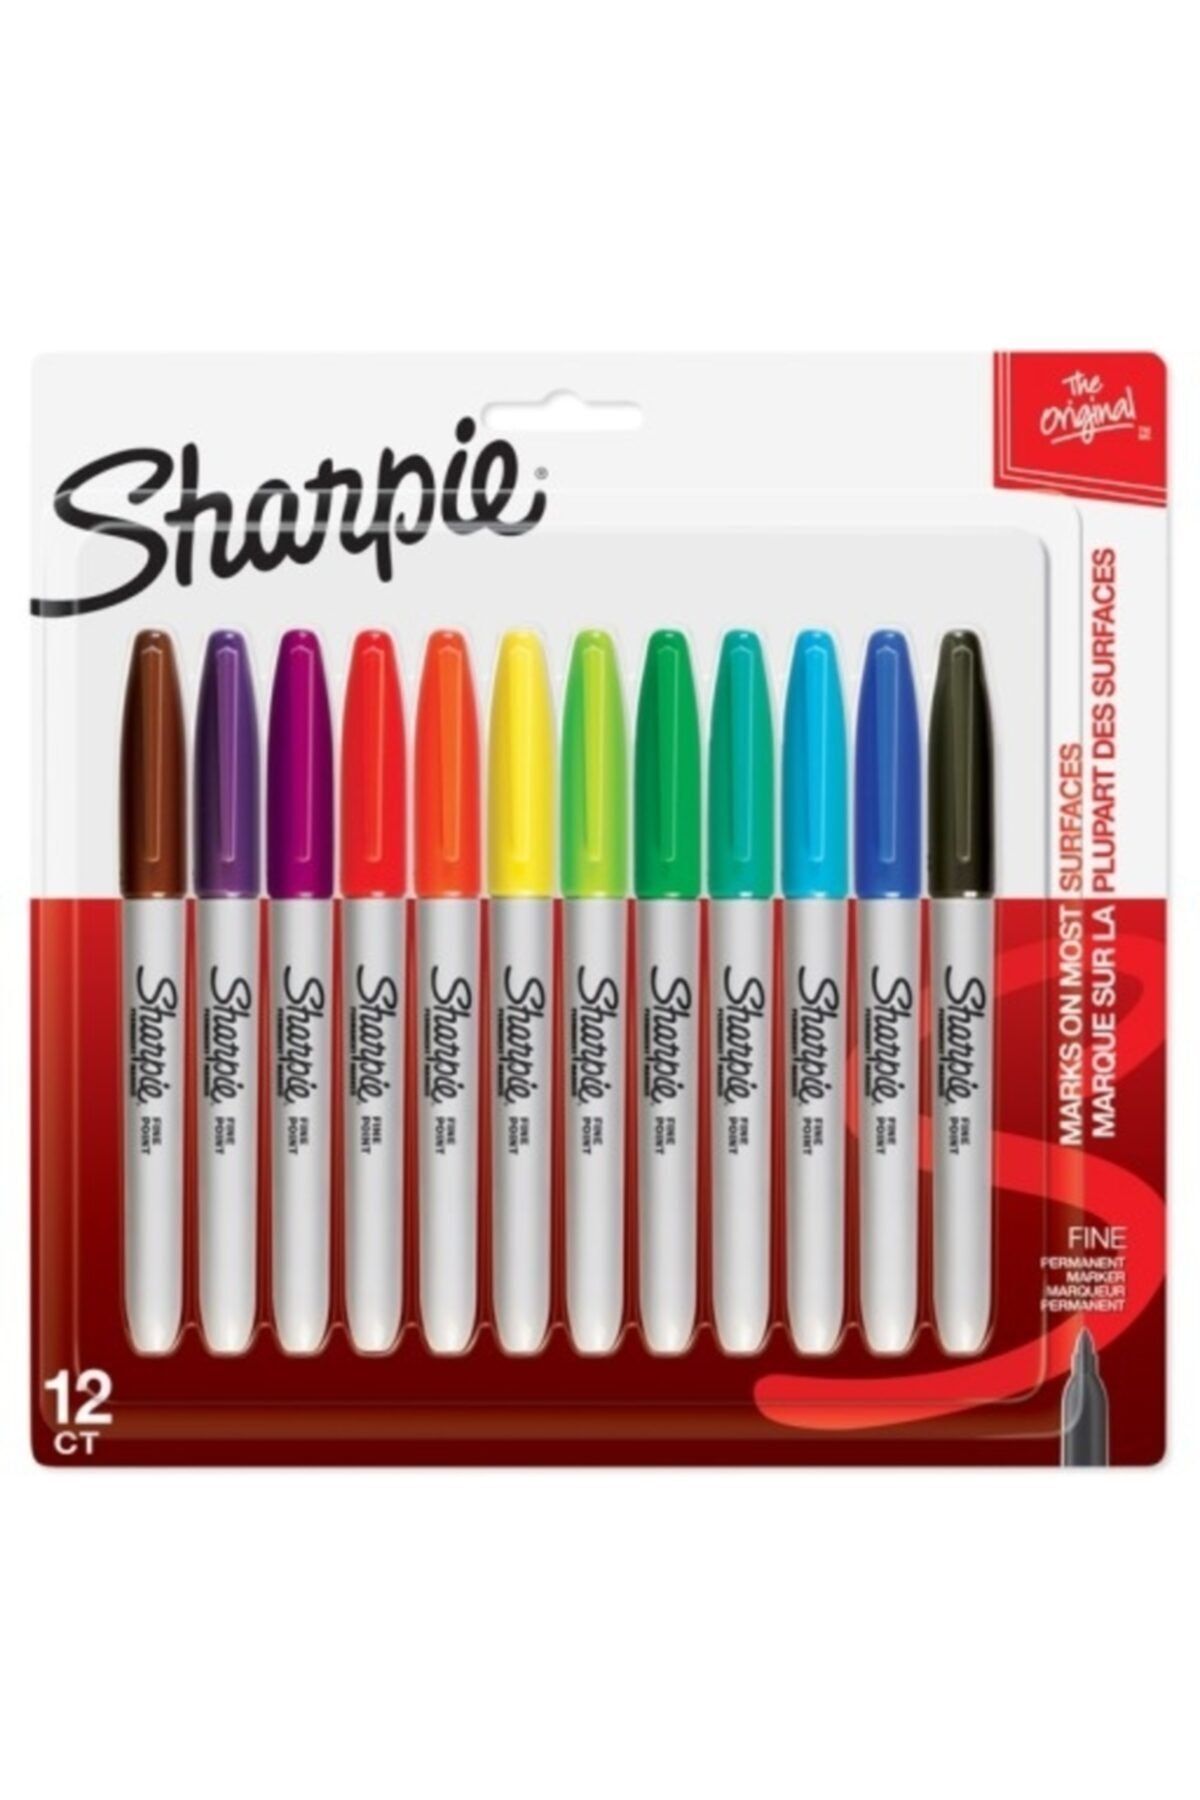 Sharpie 12 Li Karışık Renk Permanent Markör Fıne - Keçeli Kalem Boya